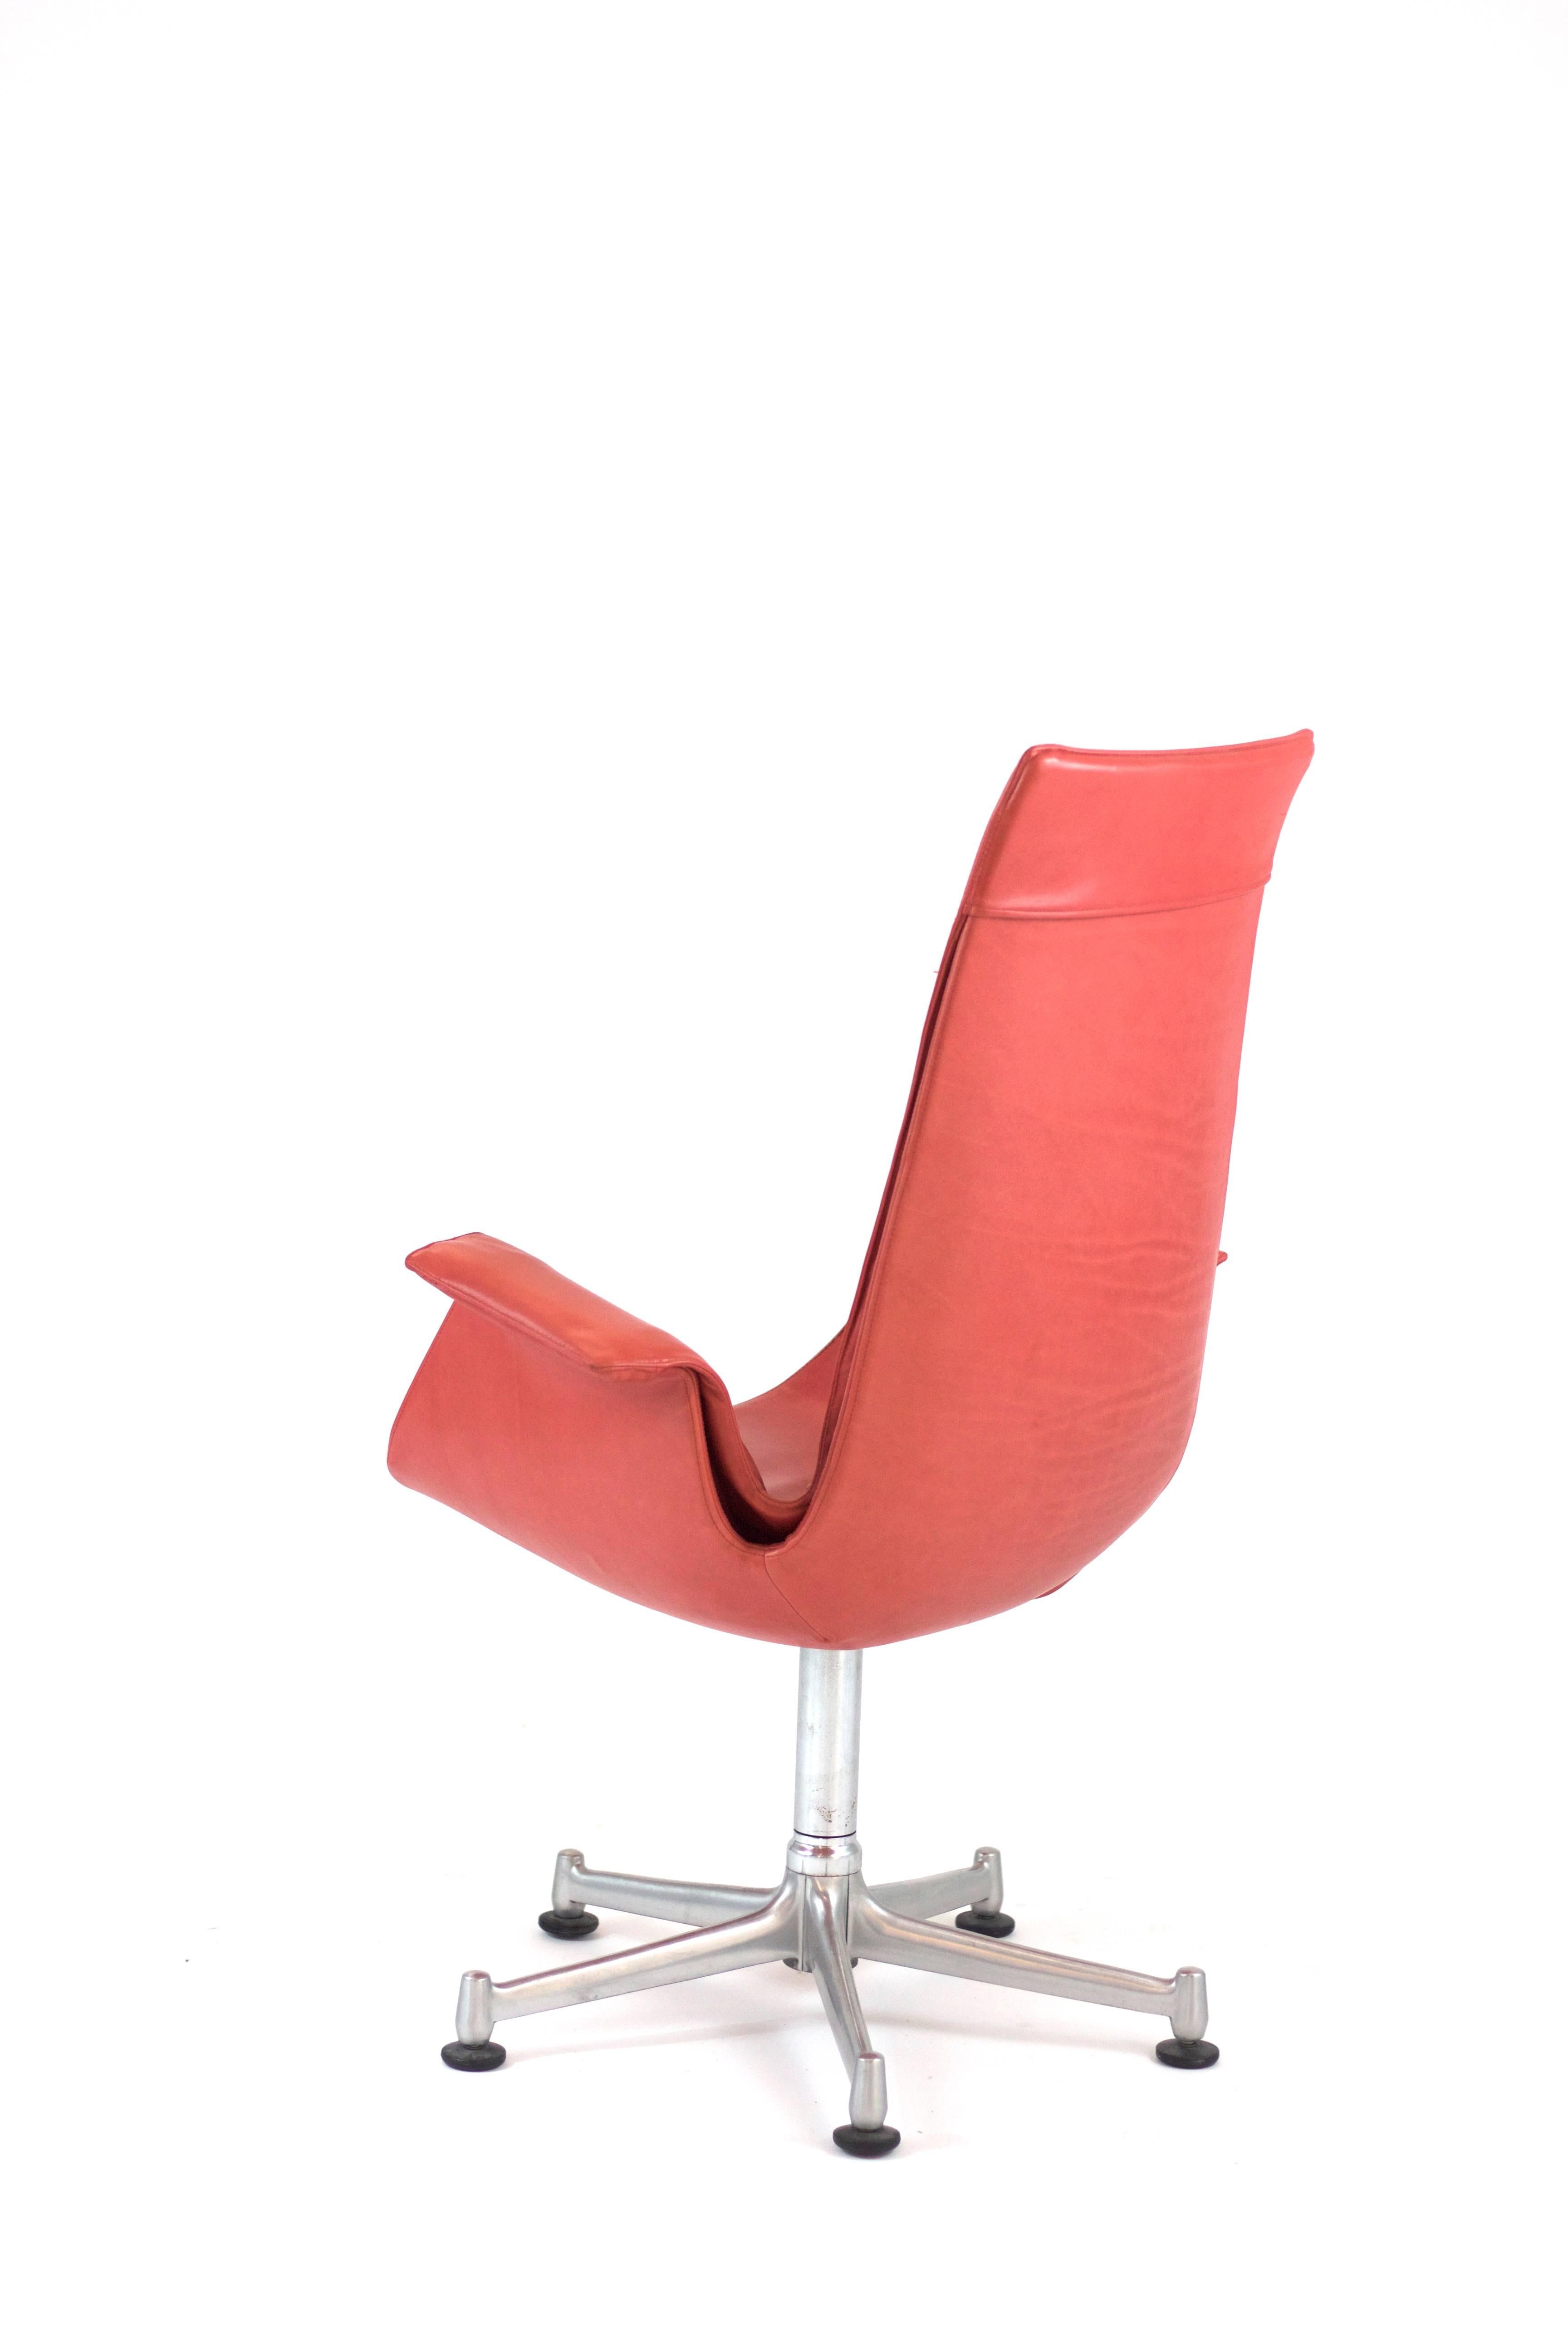 Mid-20th Century Striking Bird Chair by Preben Fabricius and Jorgen Kastholm